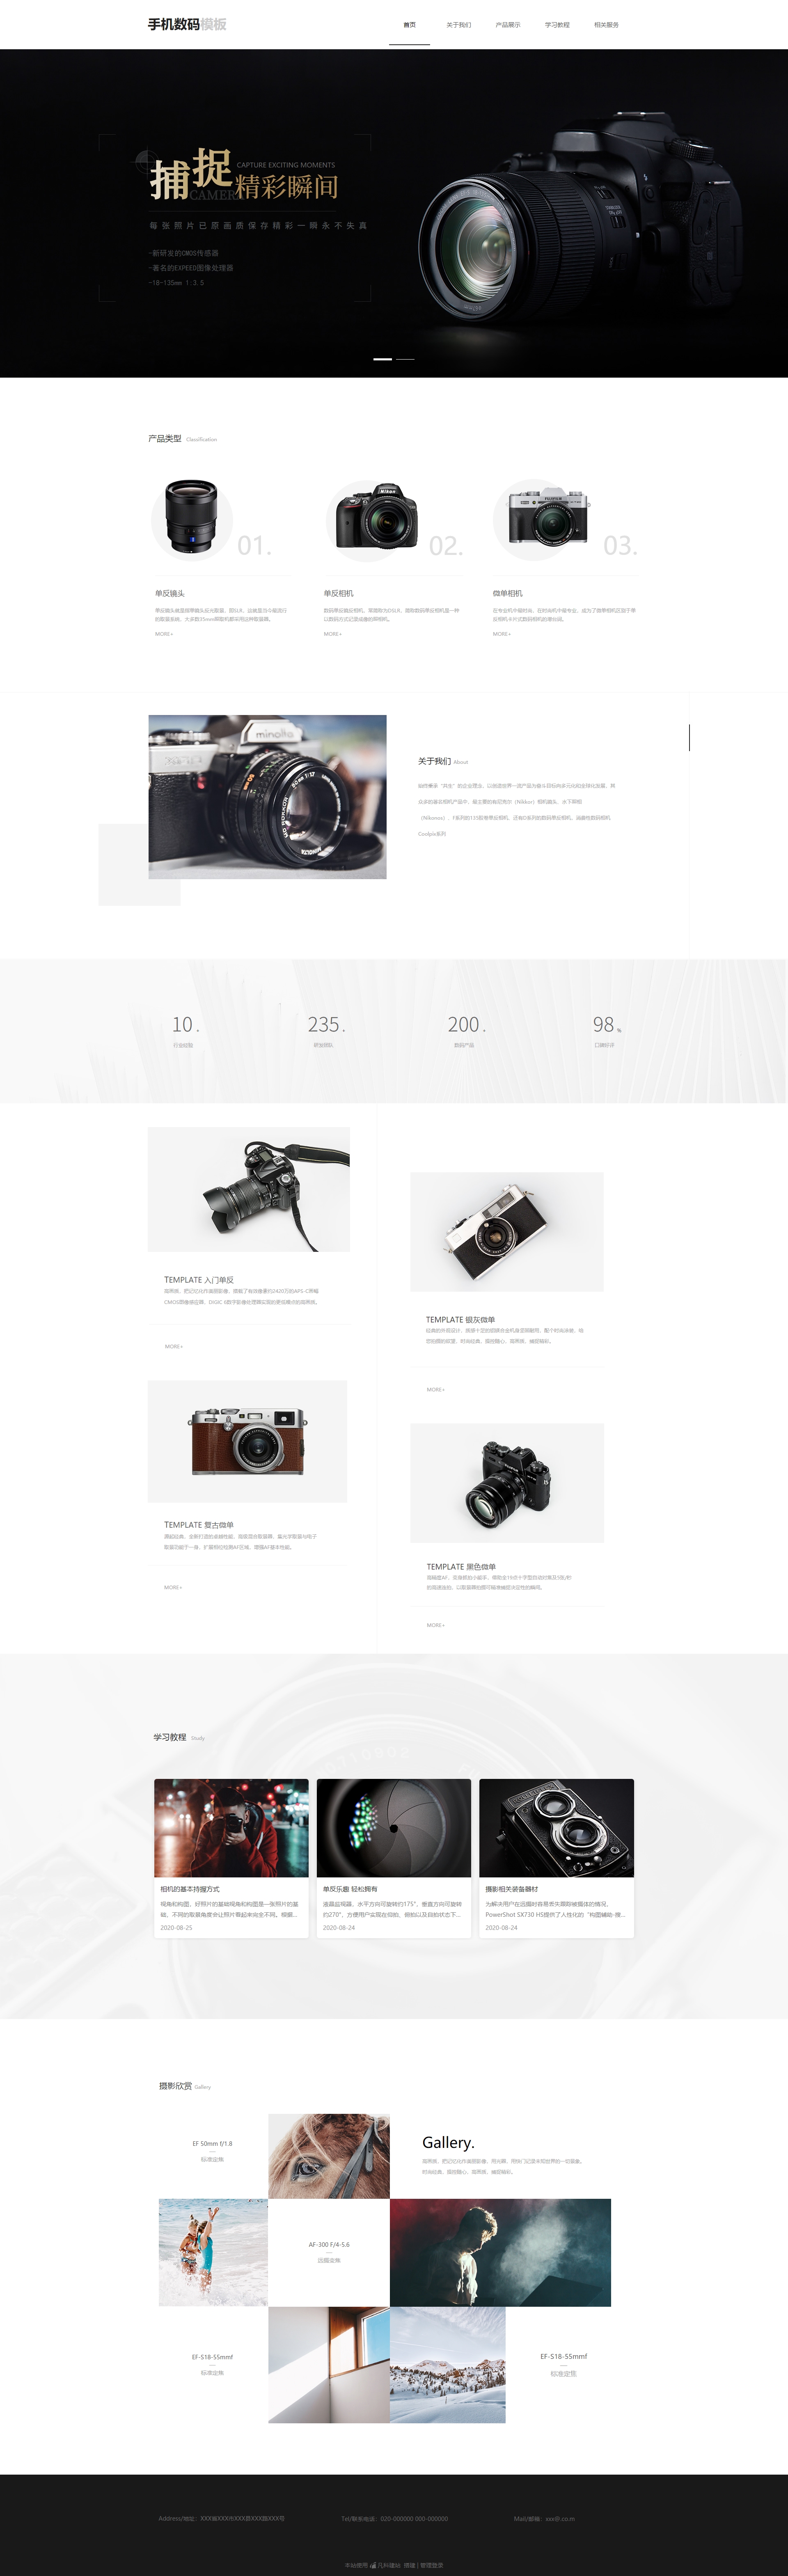 精品数码相机免费网站模板